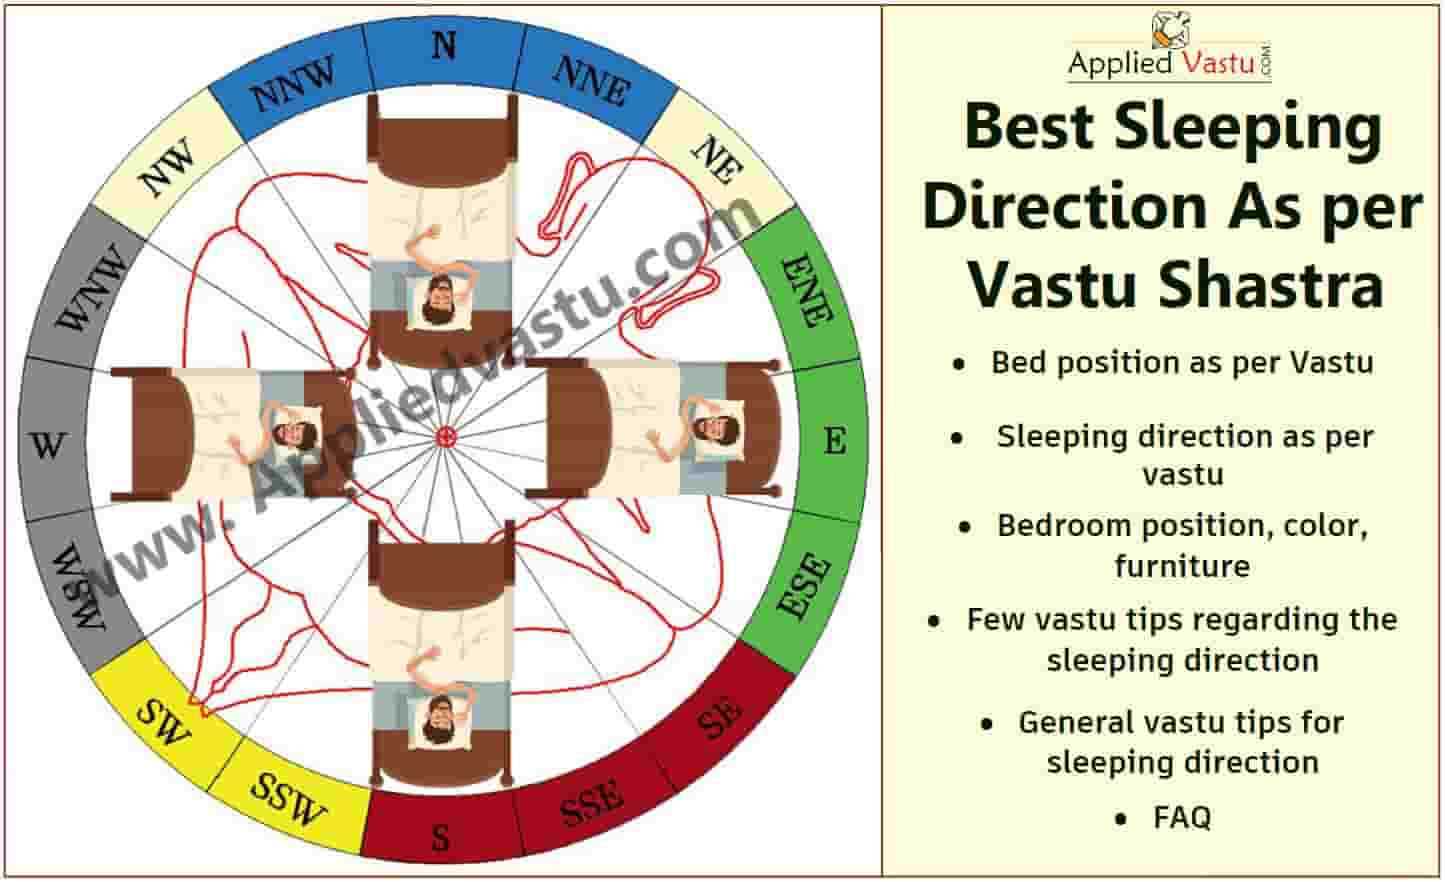 Sleeping direction as per vastu - Ideal sleeping direction - Best Vastu direction as per vastu-Applied Vastu